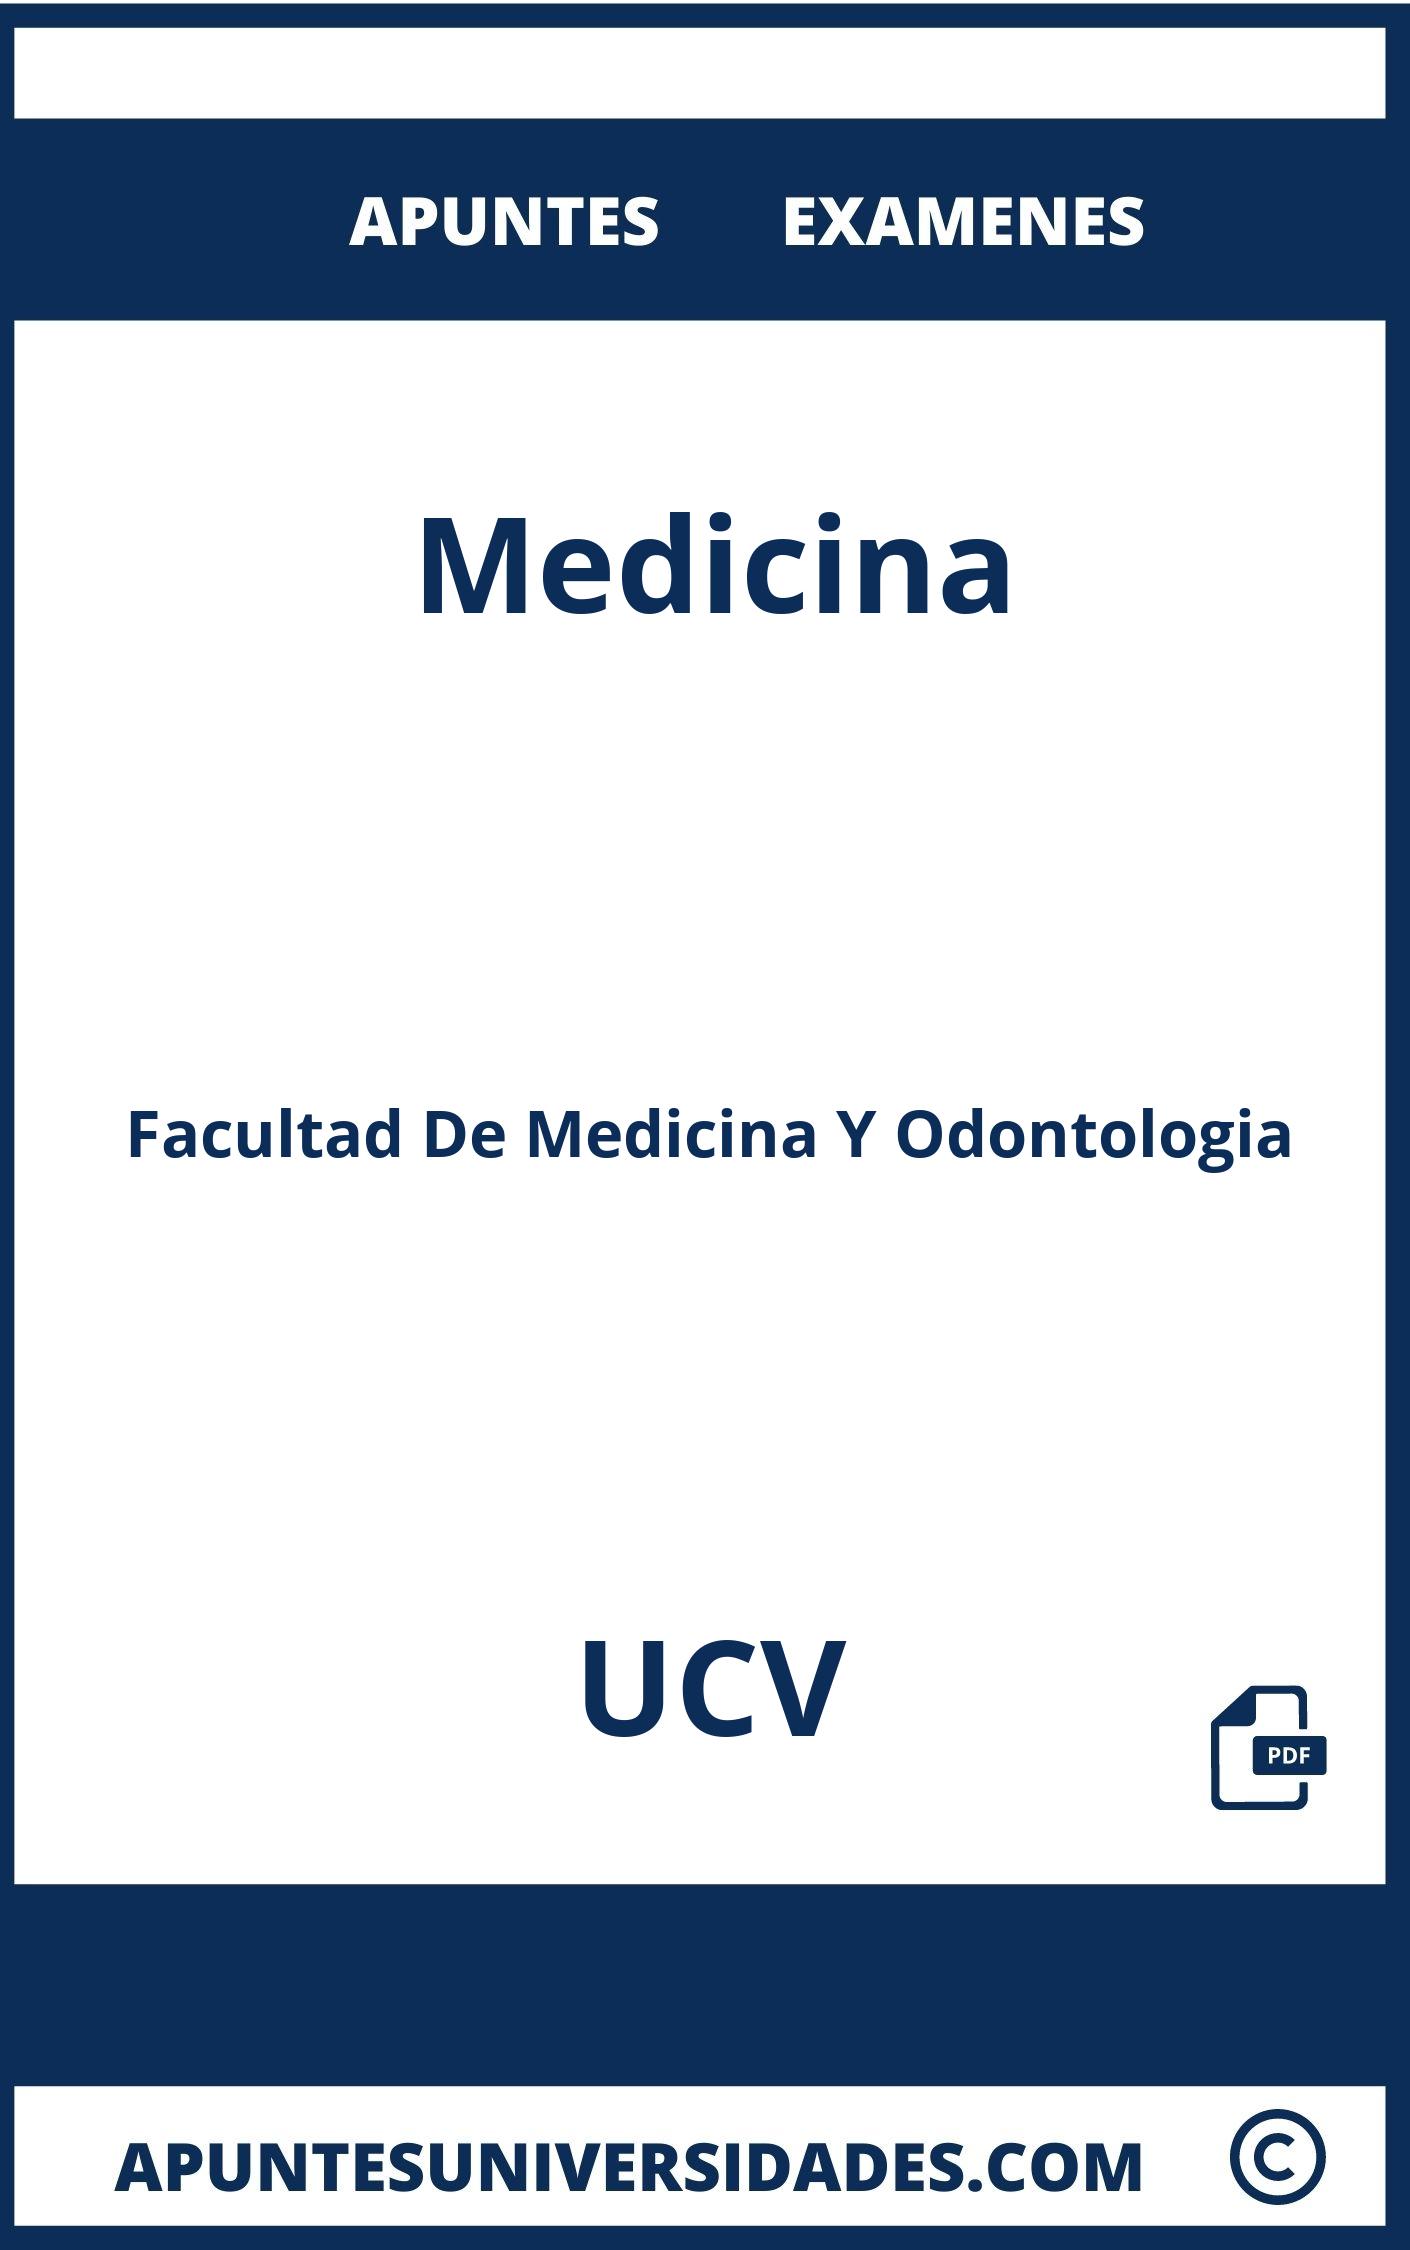 Apuntes y Examenes Medicina UCV